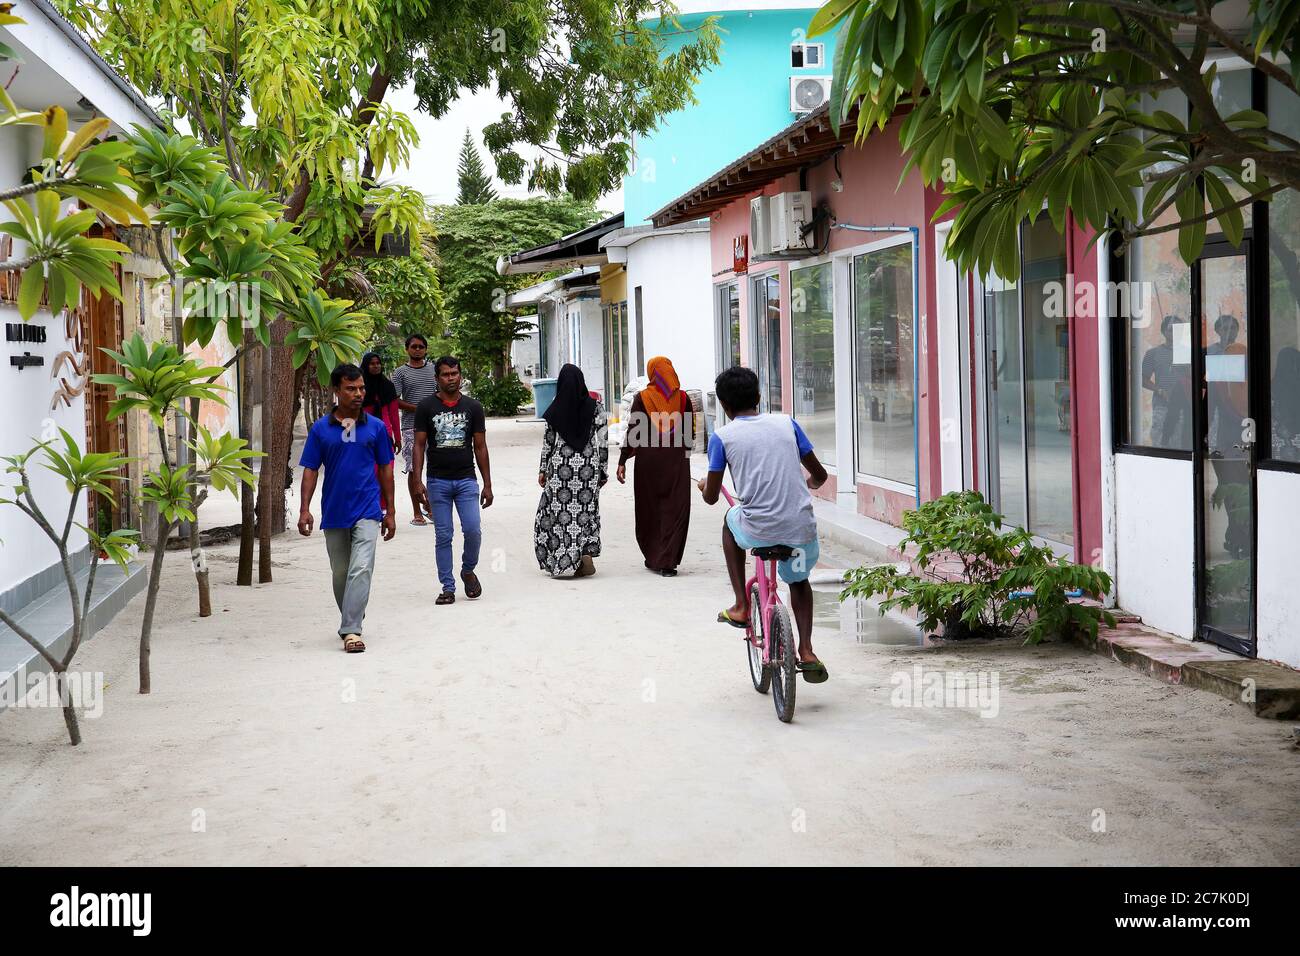 Calle tipica de la isla de Guraidhoo con gente caminando, Isla Gulhi Maldivas Stock Photo